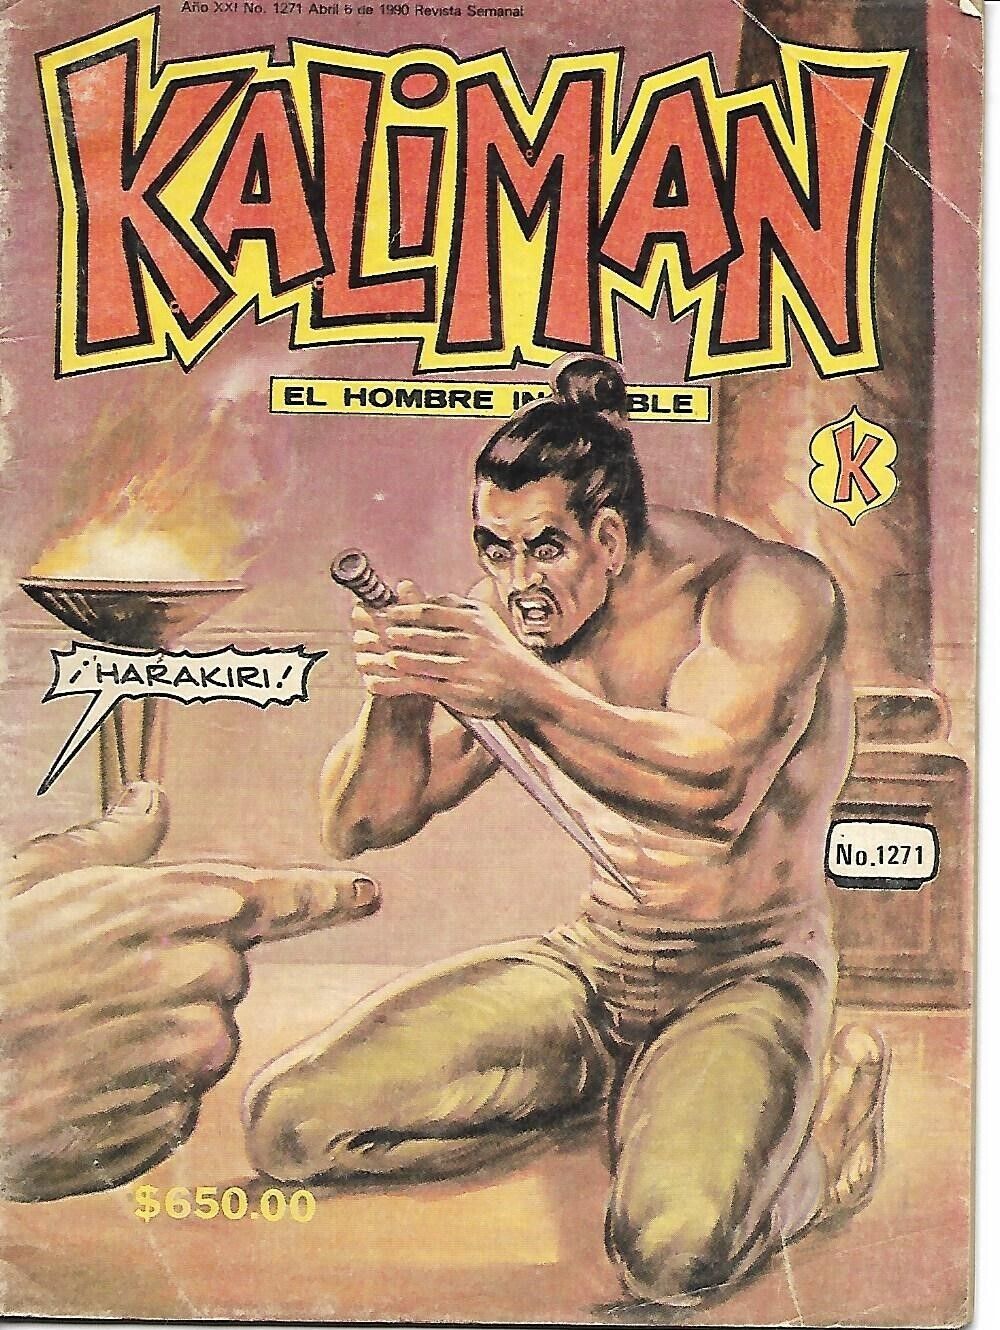 Kaliman El Hombre Increible #1271 - Abril 6, 1990